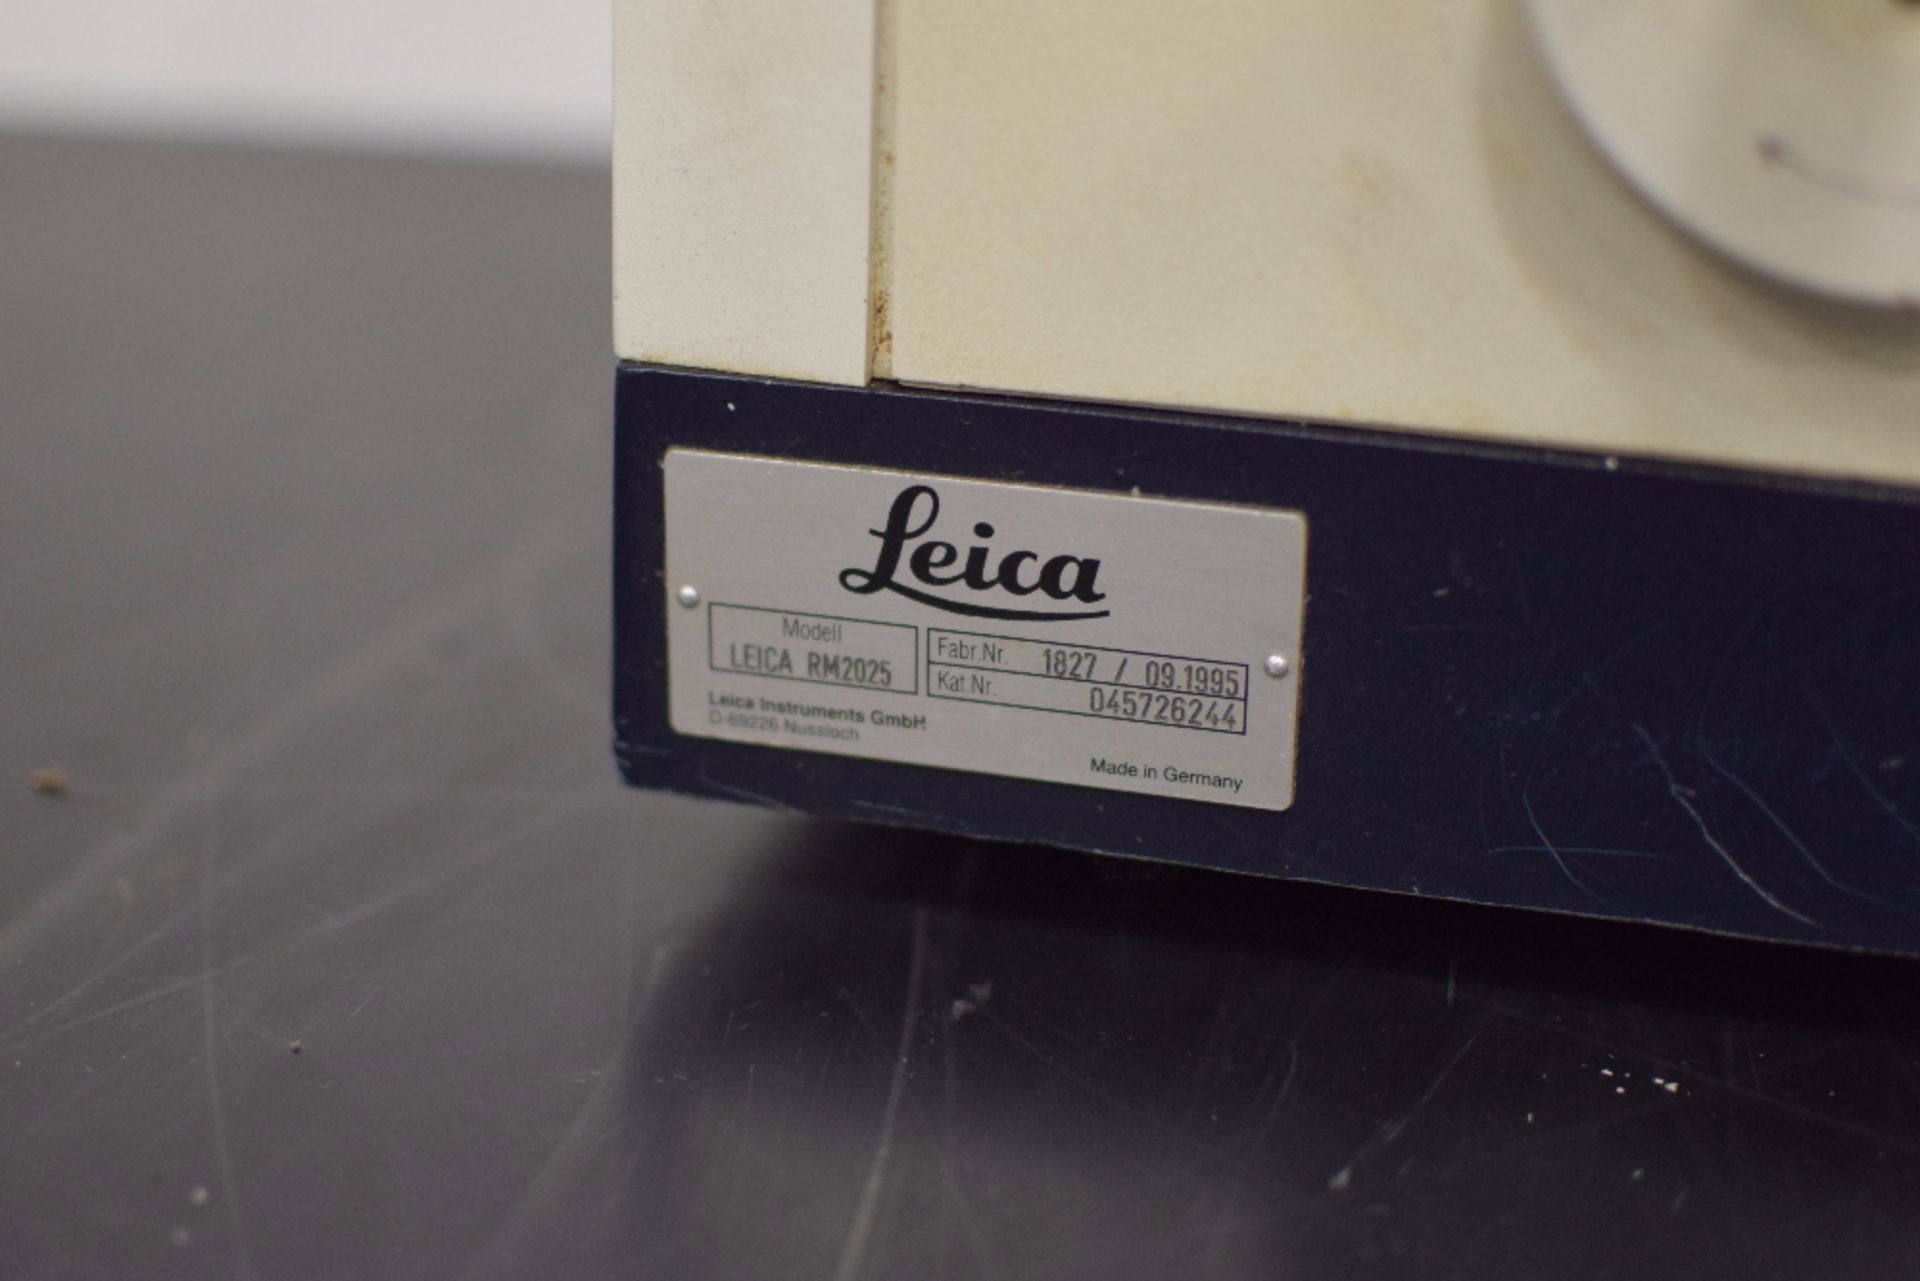 Leica RM2025 Microtome - Image 3 of 3